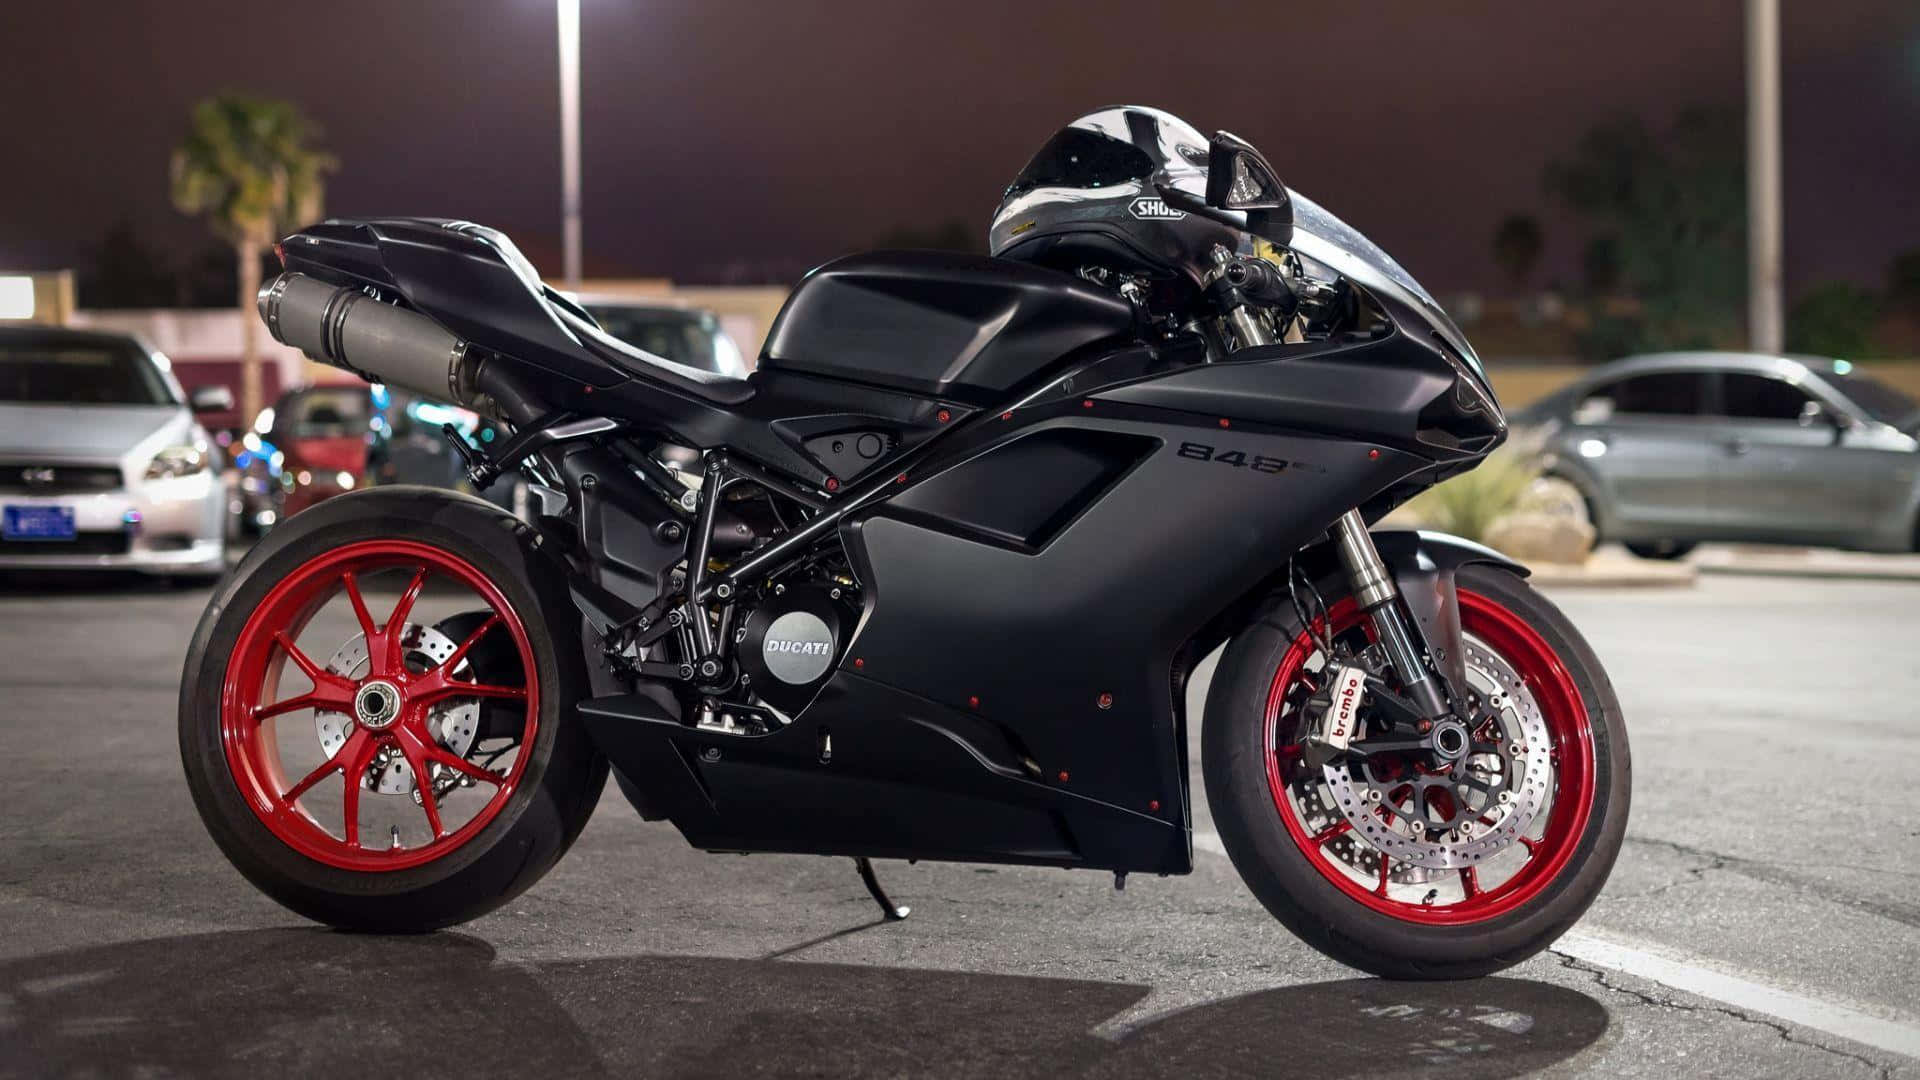 Affascinantesfondo Della Moto Ducati 848